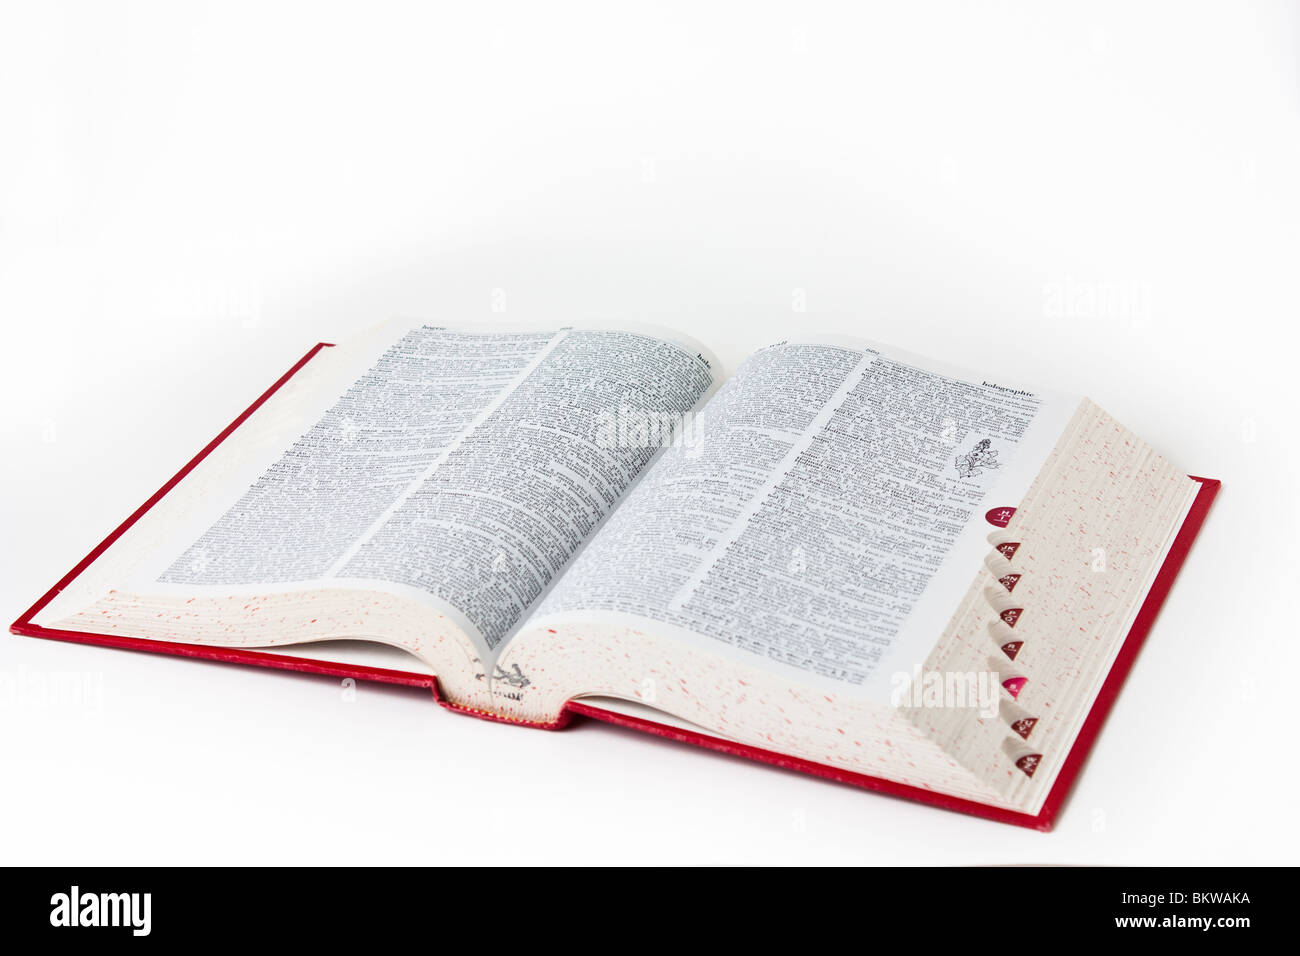 Definizione del dizionario libri libri intaglio di riferimento Foto Stock